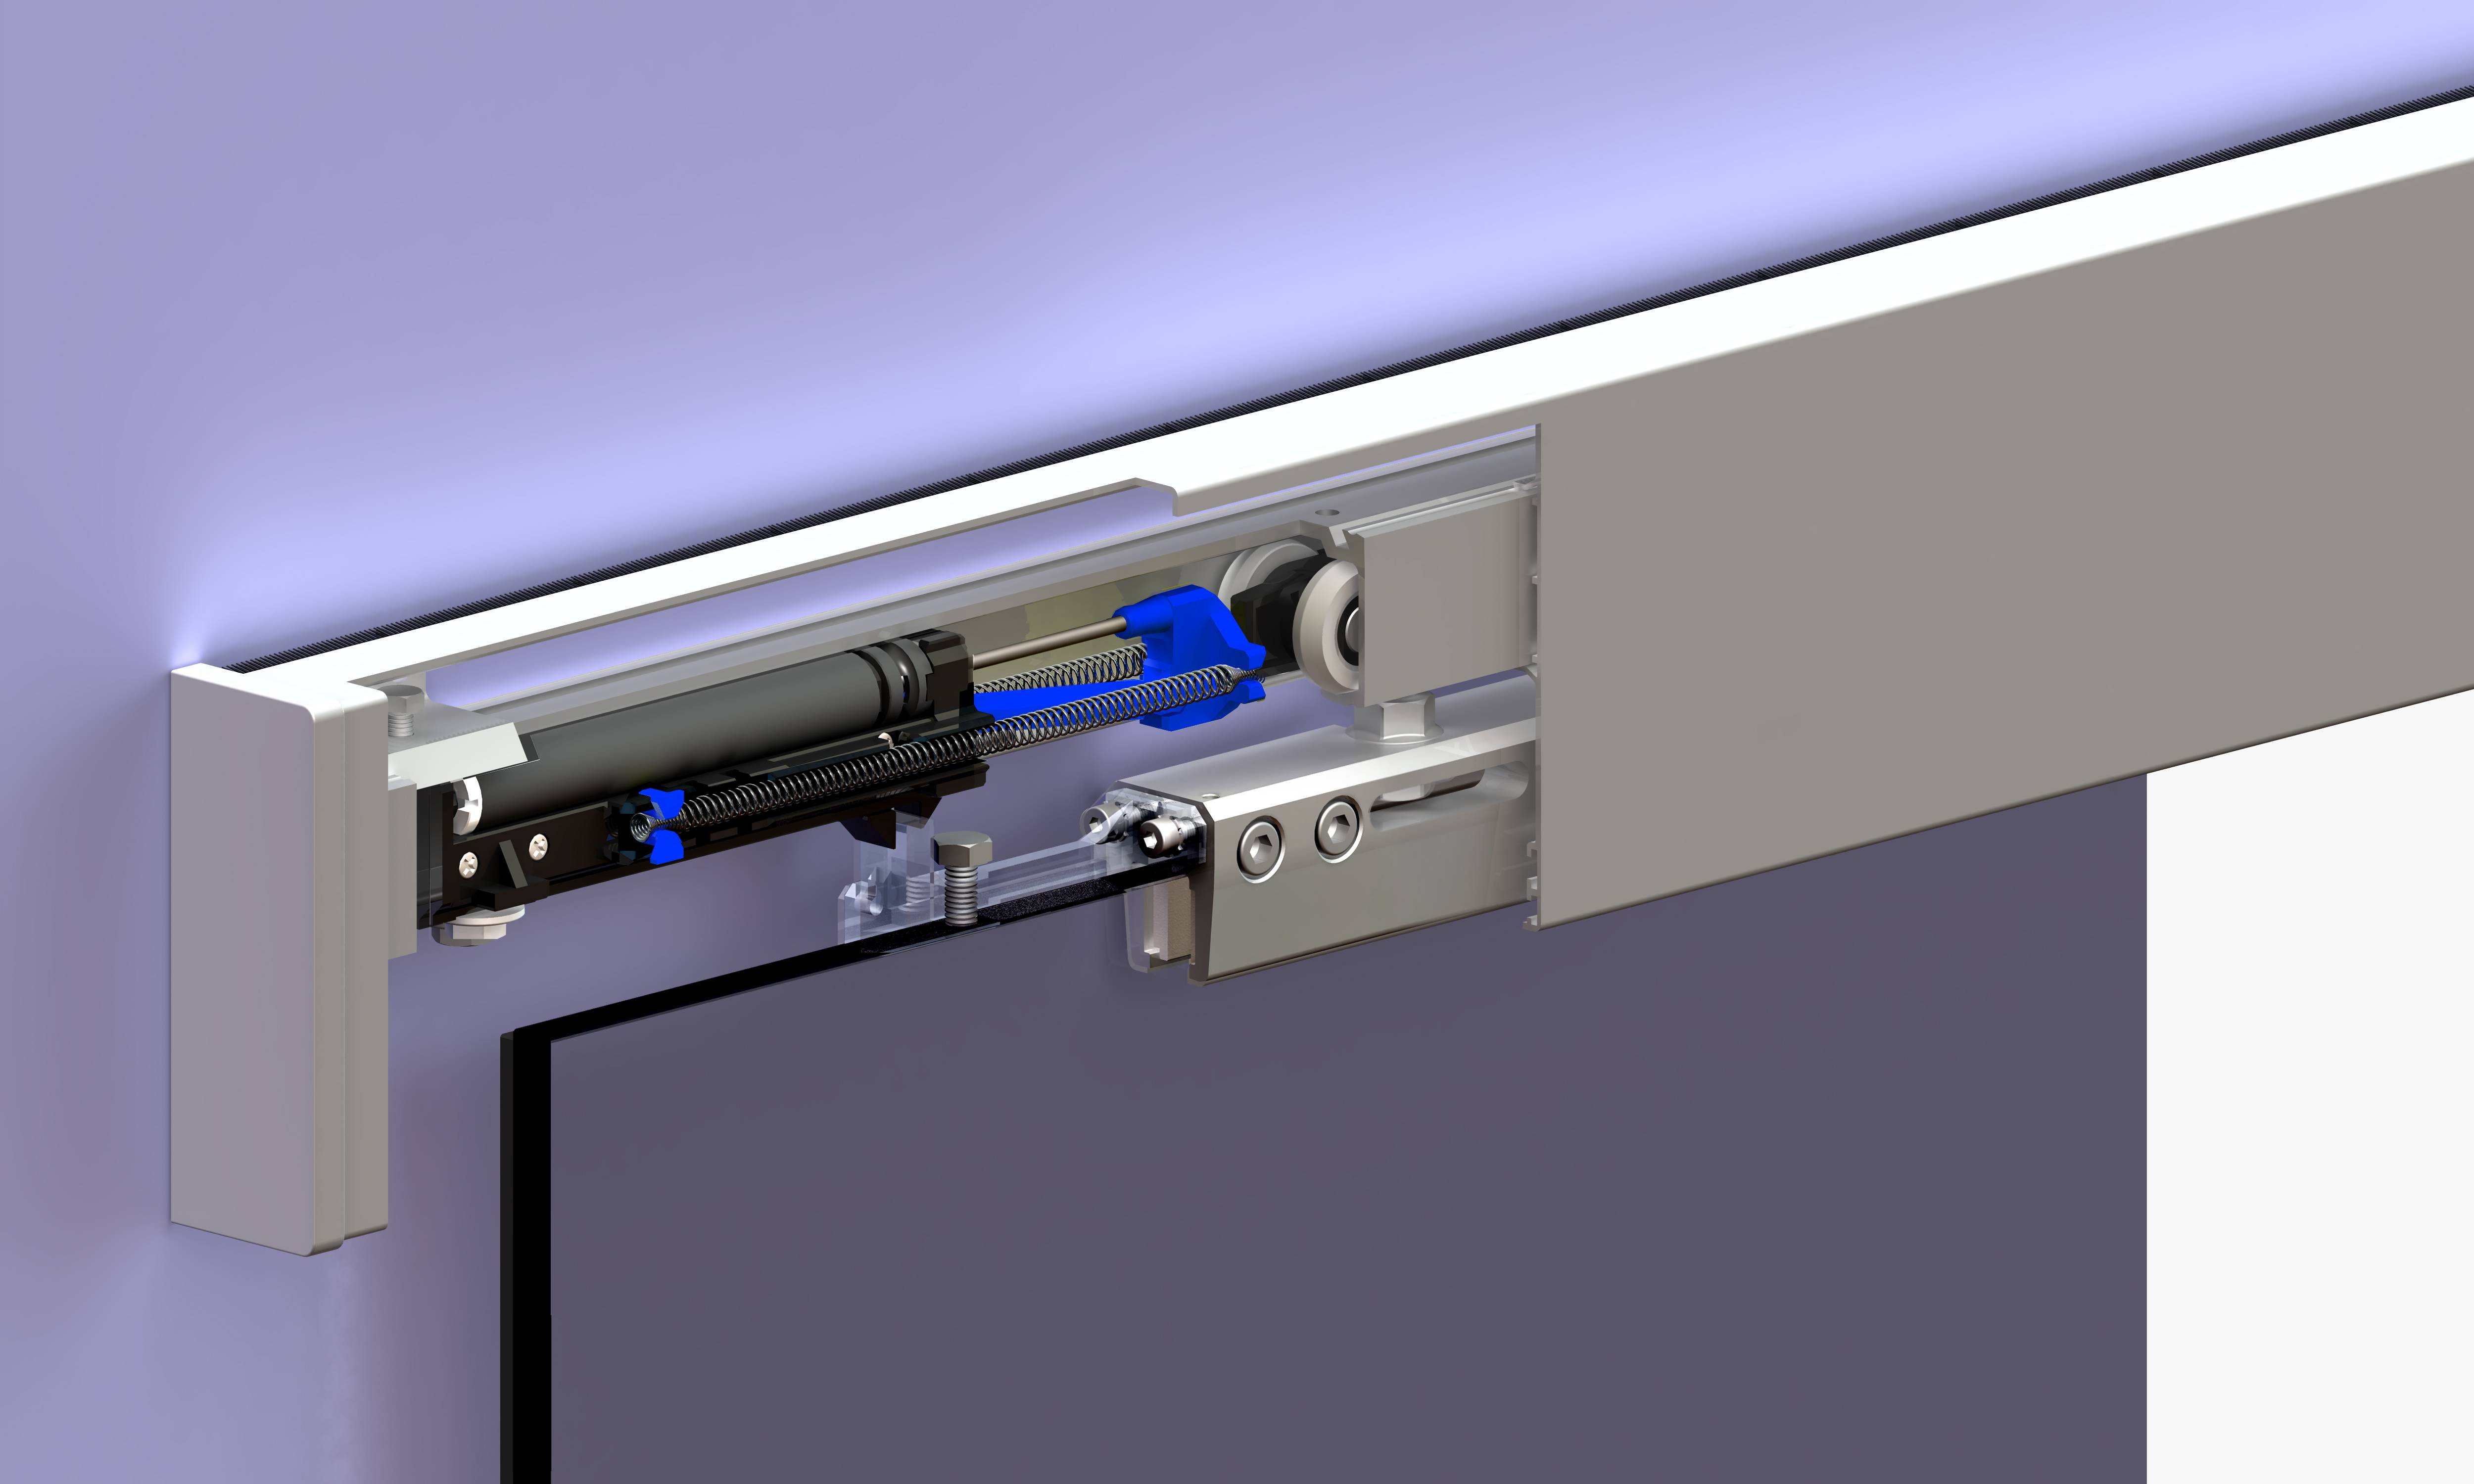 Как установить дверной доводчик на металлическую или деревянную дверь своими руками: пошаговая инструкция +видео